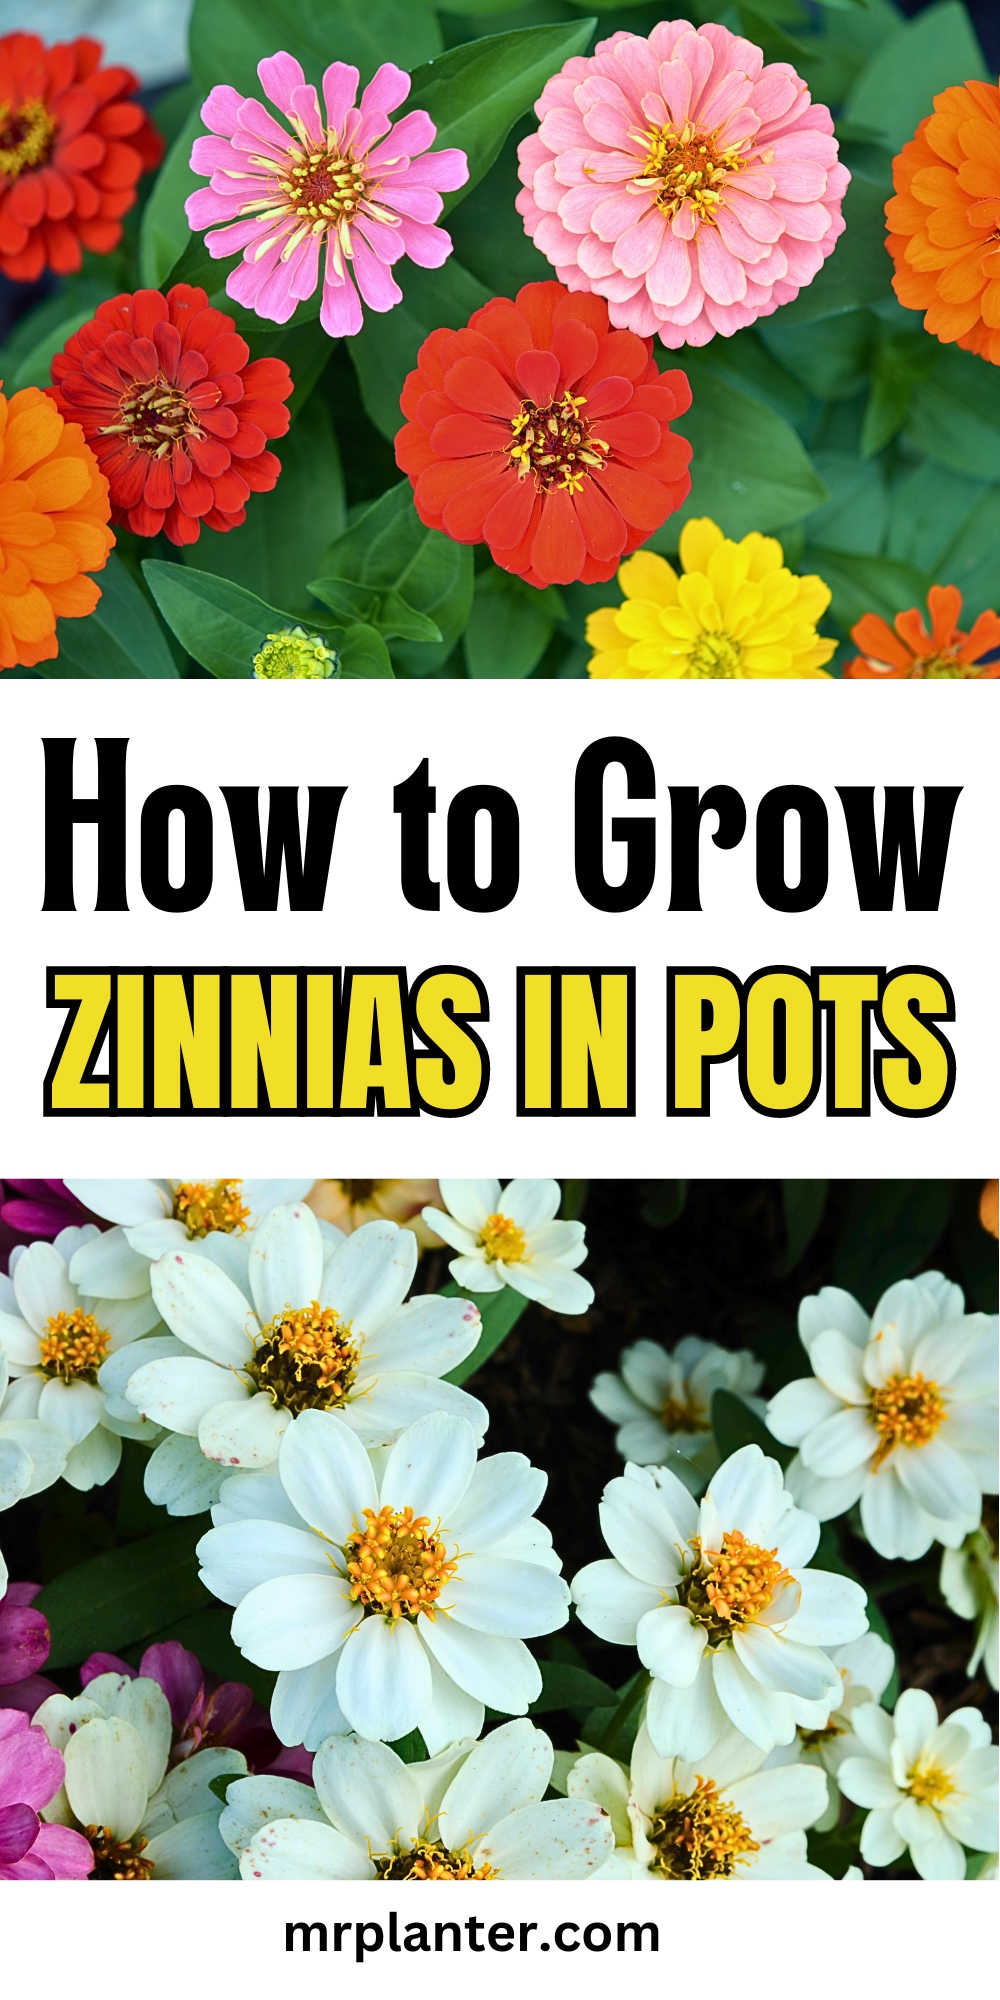 How to Grow Zinnias in Pots